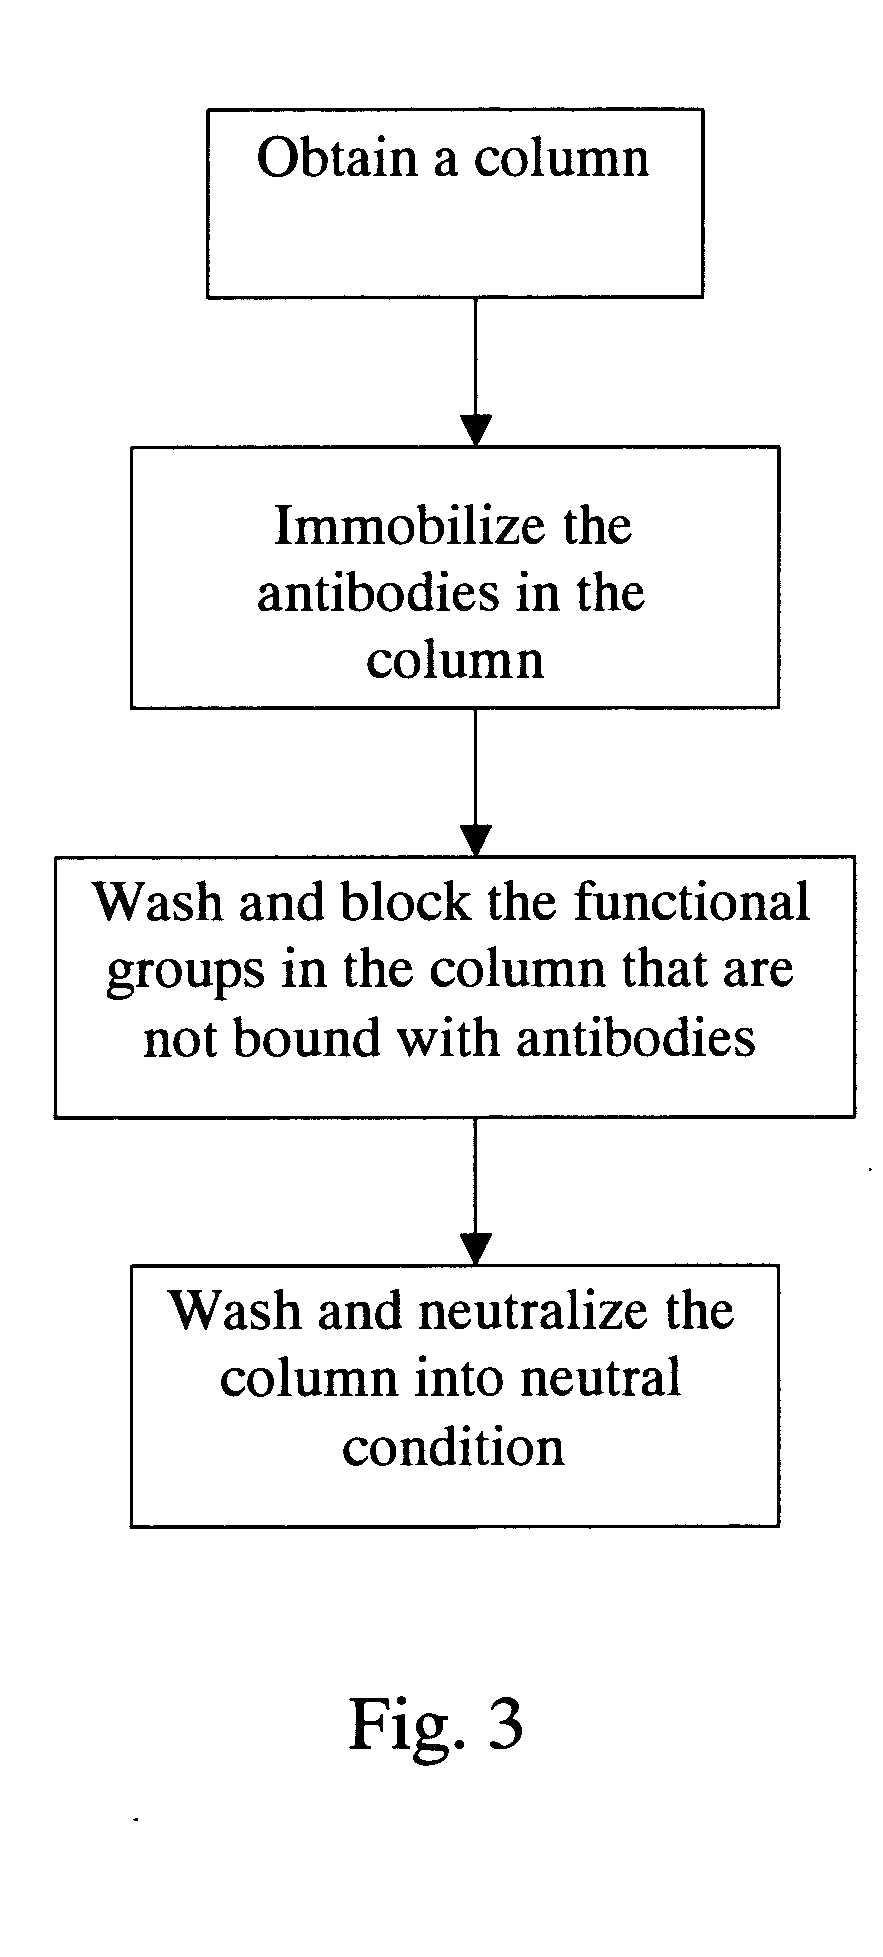 Method for screening autoantigen